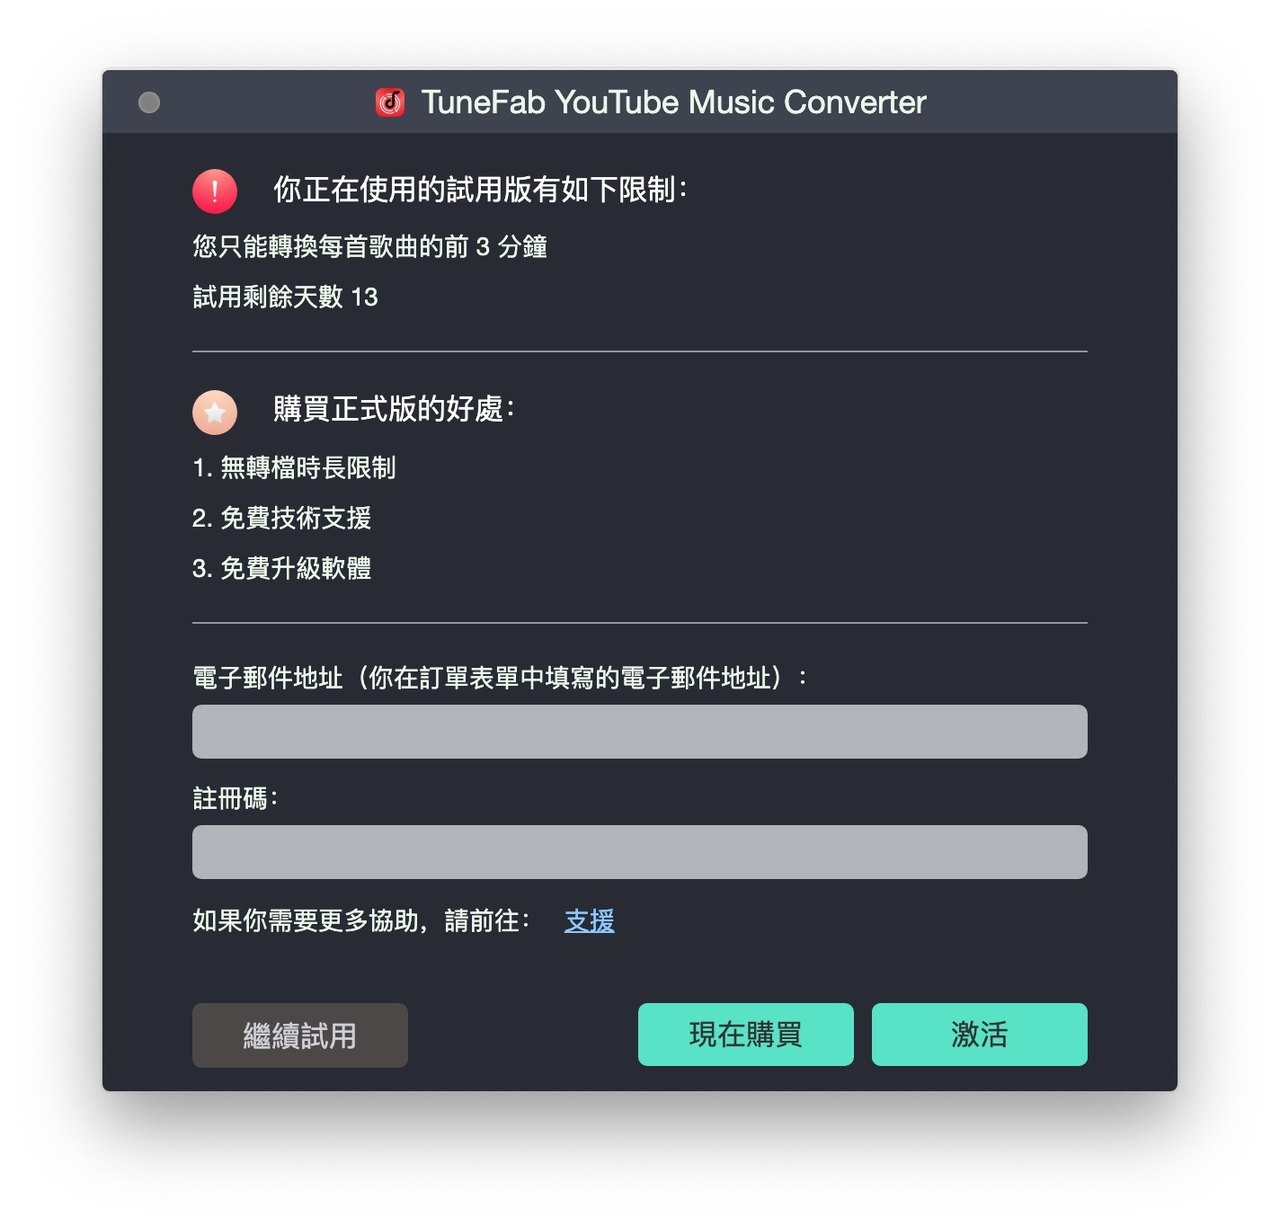 註冊 TuneFab YouTube 音樂轉檔器